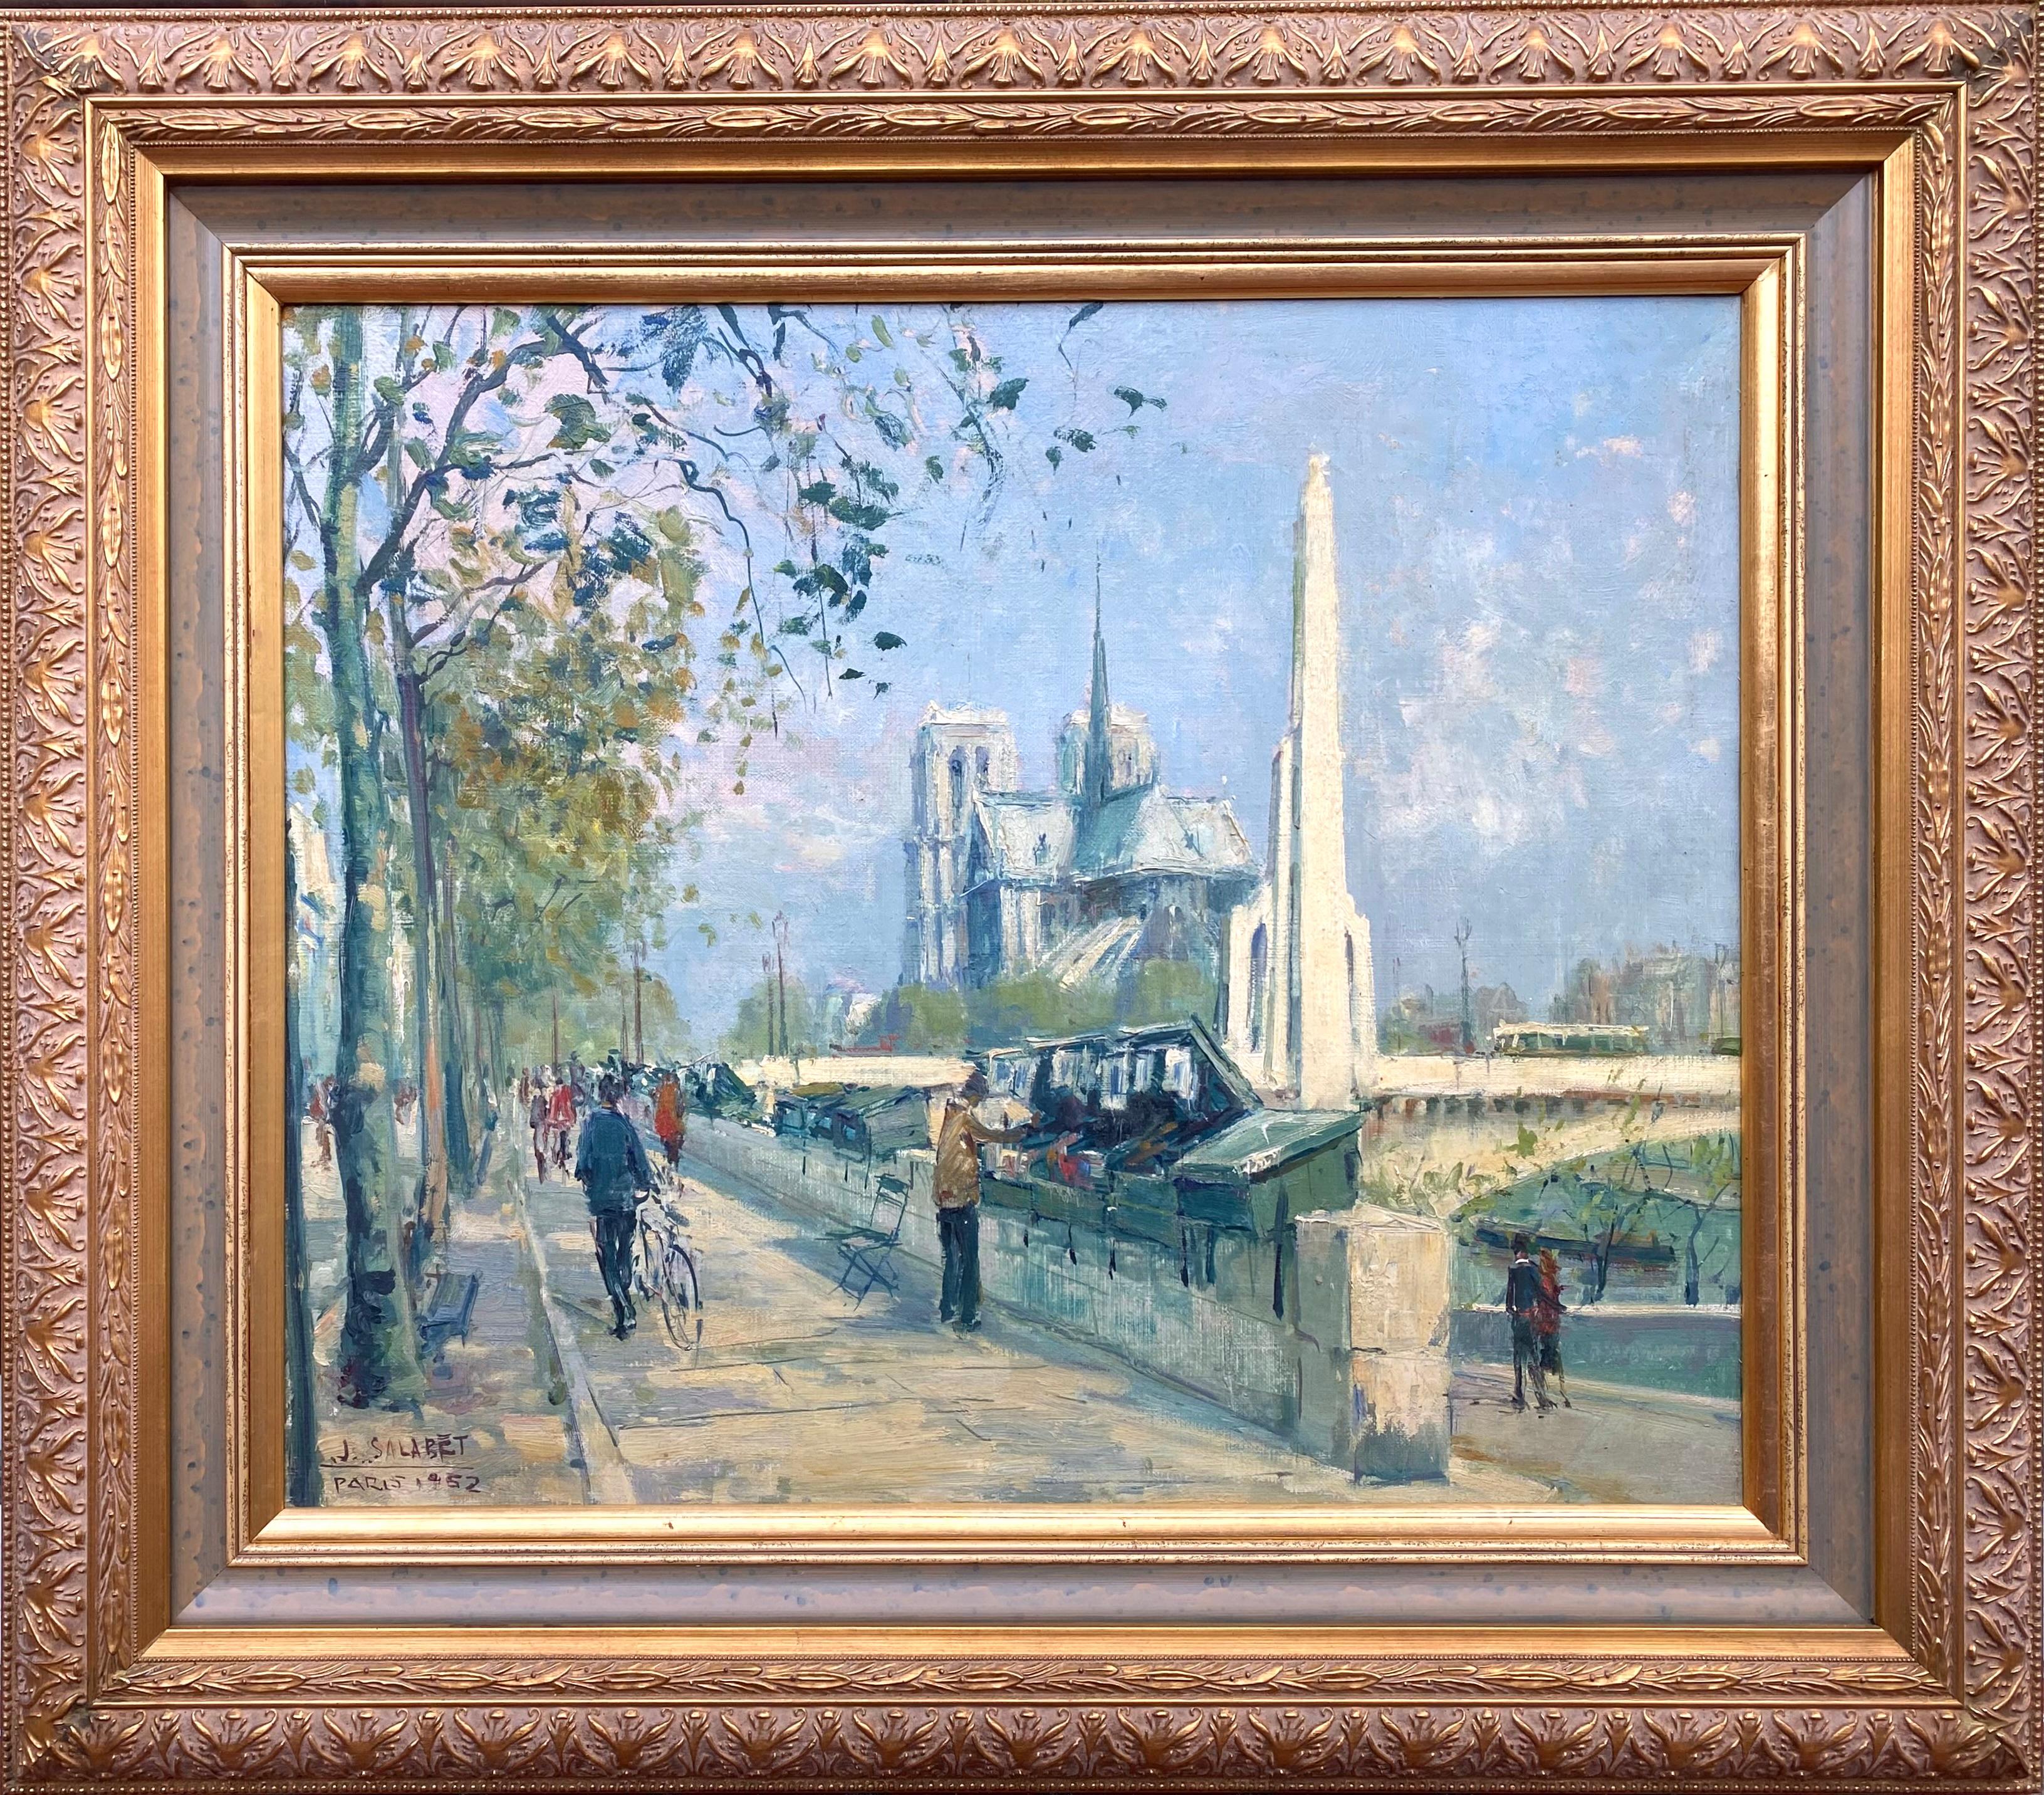 Bibliothèques parisiennes Notre Dame - Painting de Jean Salabet